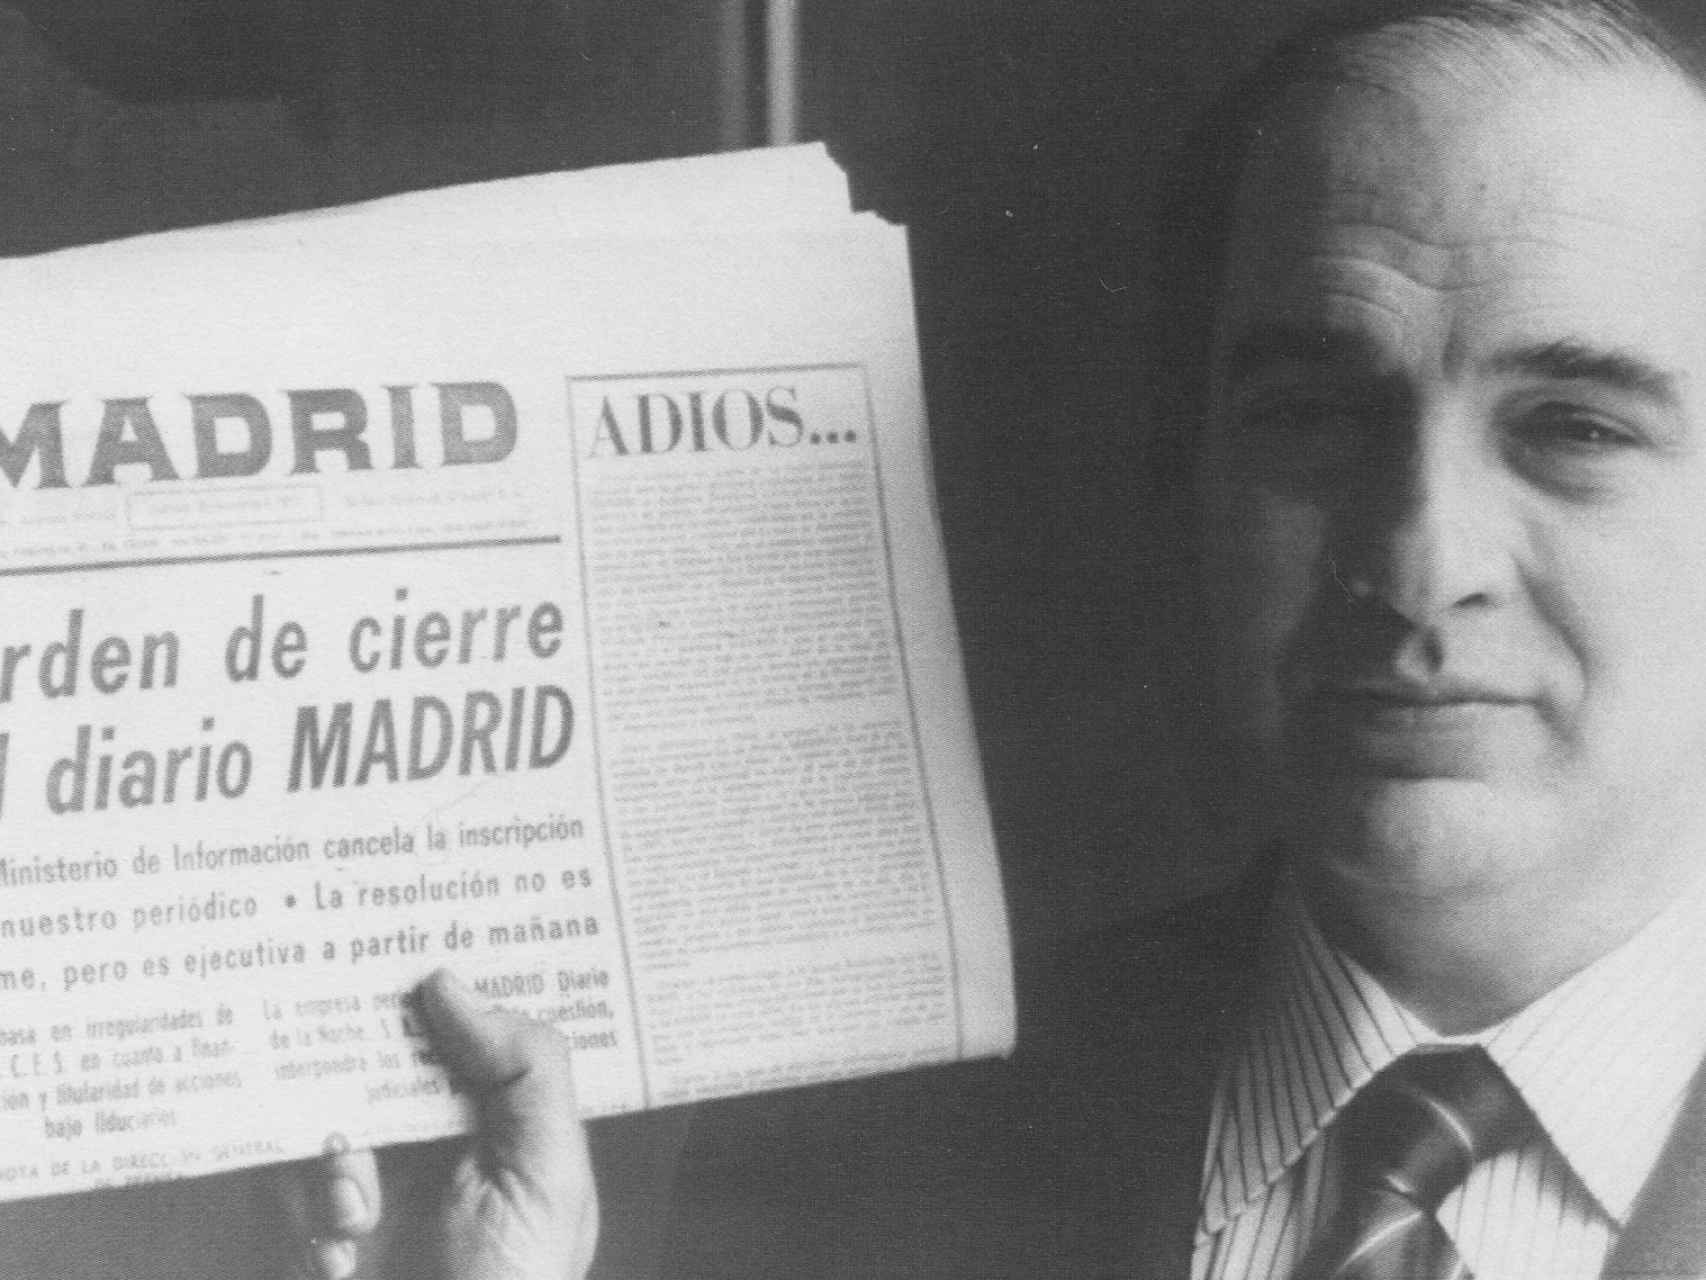 Fontán sostiene la última portada del diario Madrid, recién clausurado por el régimen franquista.